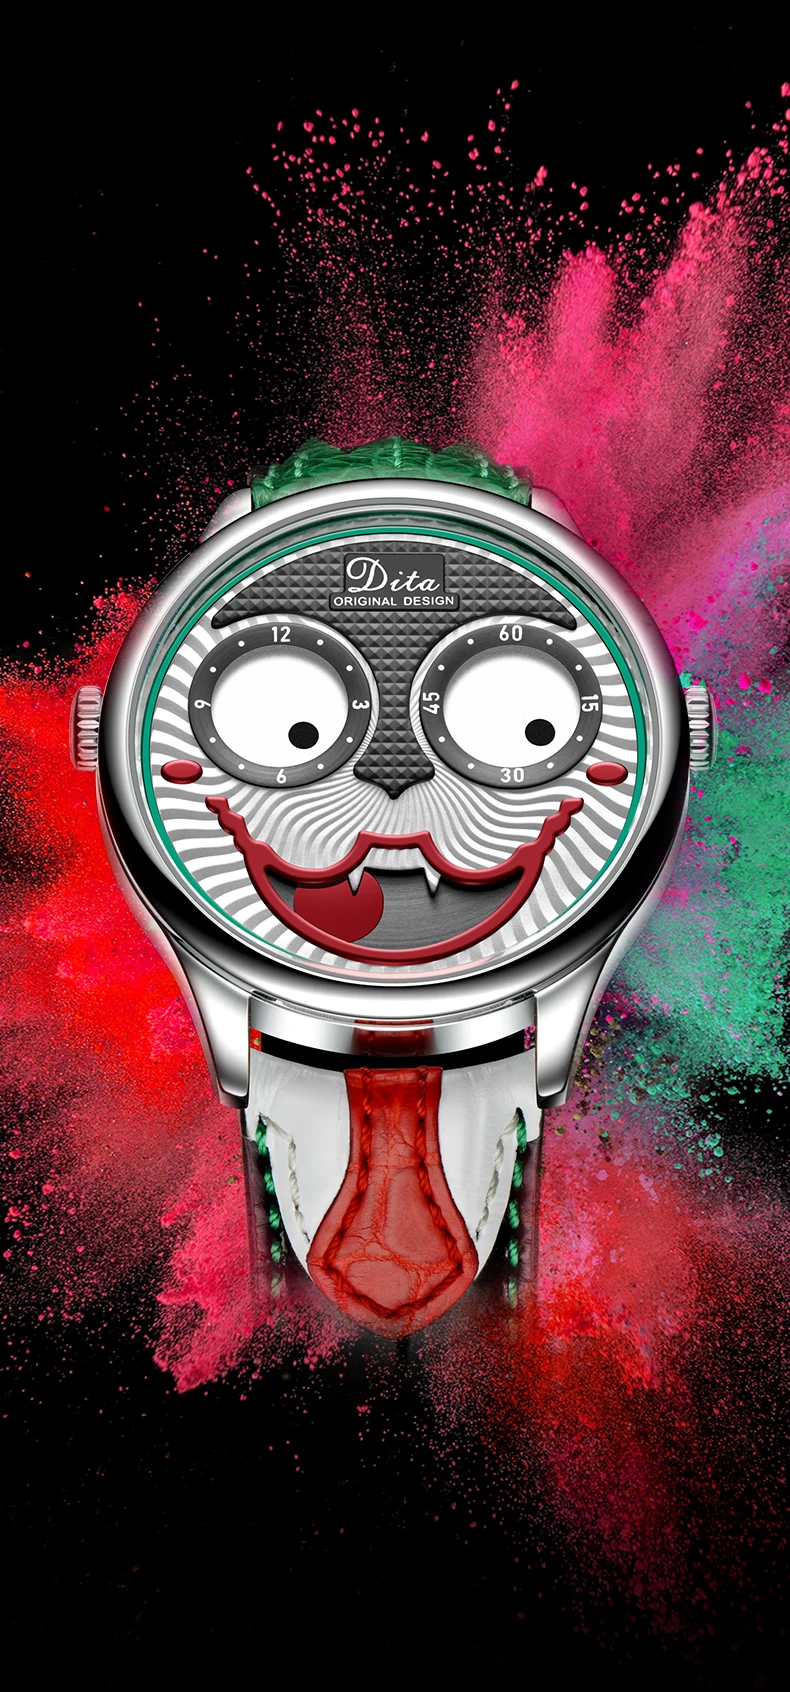 Новое поступление Joker мужские часы лучший бренд класса люкс клоун Кварцевые спортивные часы мужские s студенческие псевдо антикварные часы модная индивидуальность